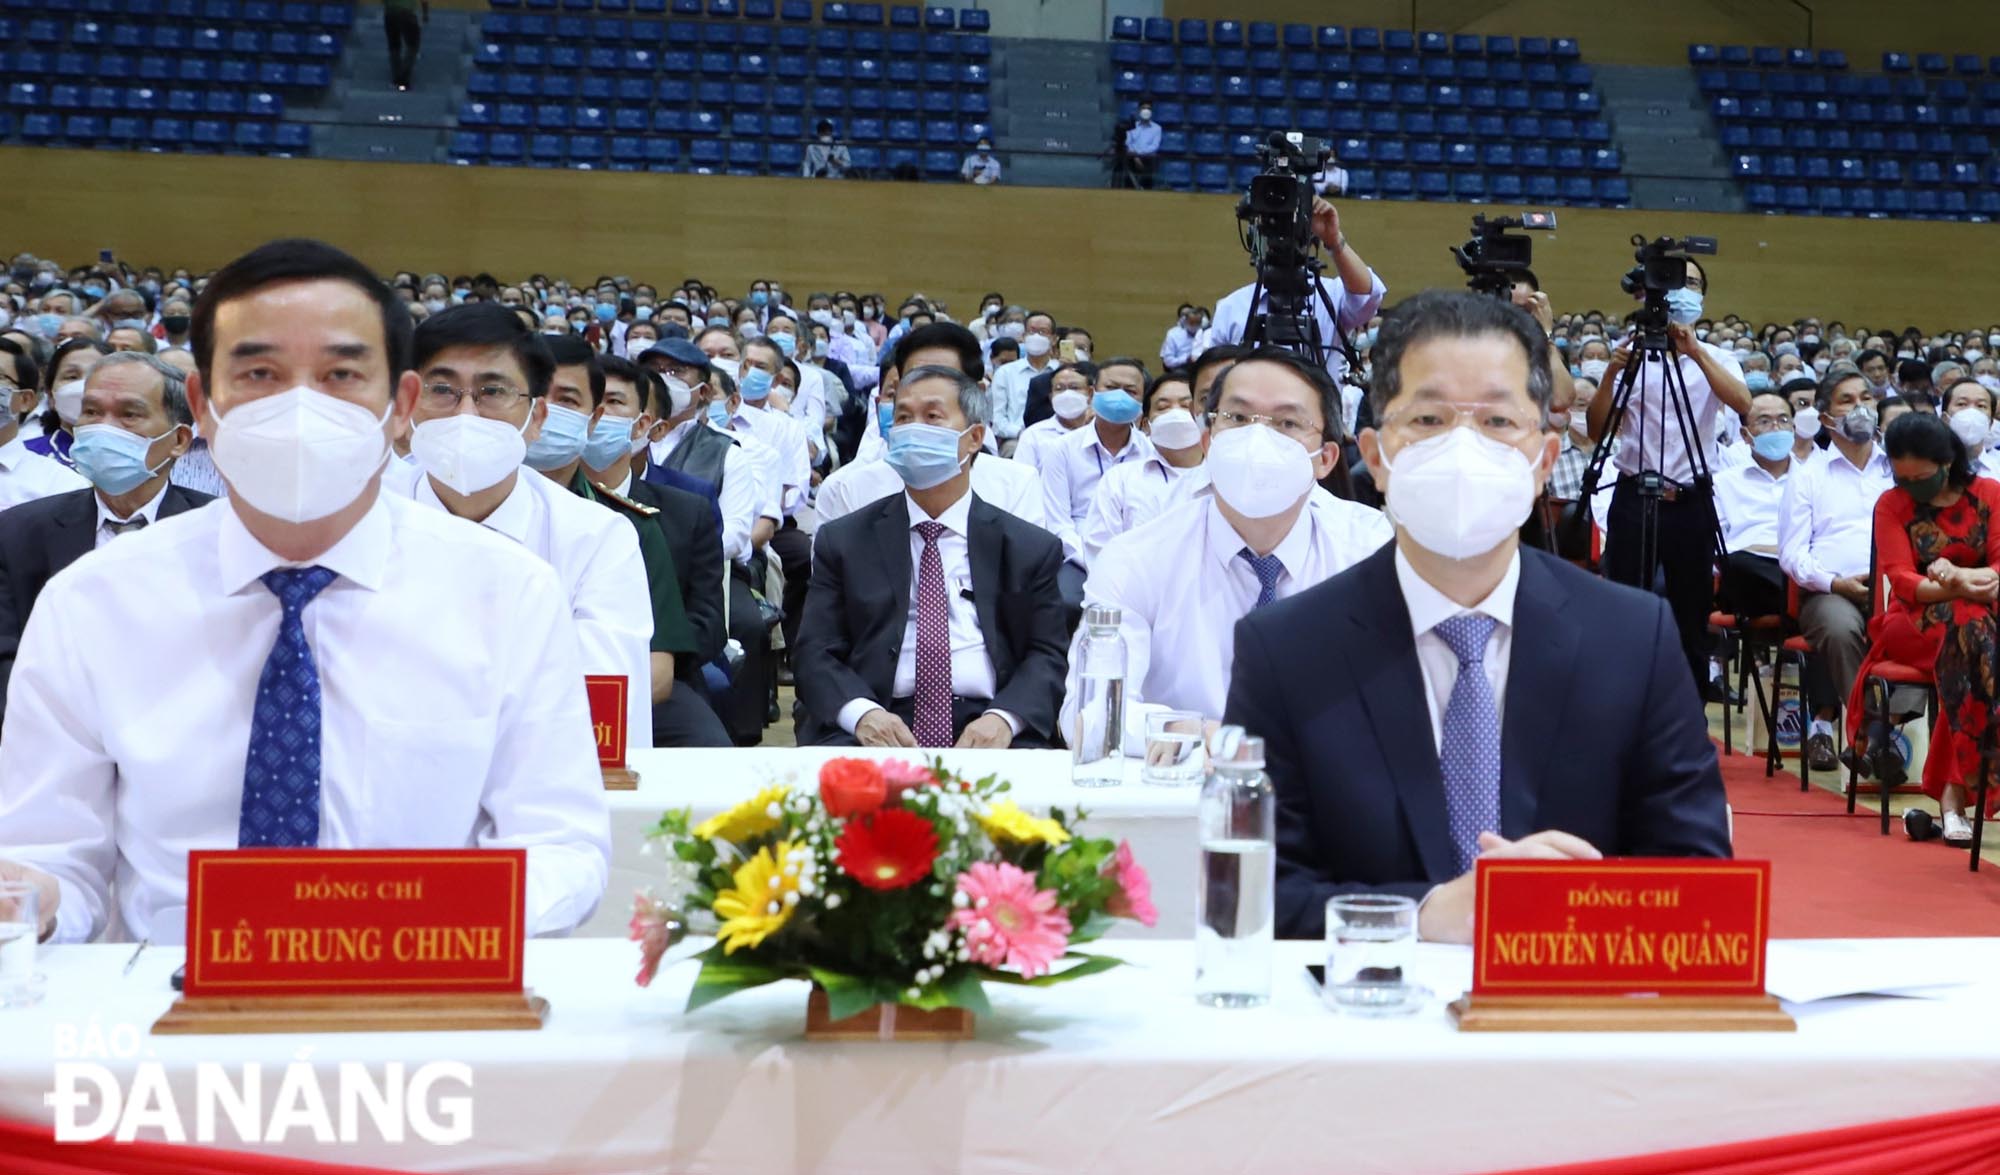 Bí thư Thành ủy Nguyễn Văn Quảng (bên phải) và Chủ tịch UBND thành phố Lê Trung Chinh (bên trái) cùng các đại biểu dự hội nghị. Ảnh: NGỌC PHÚ